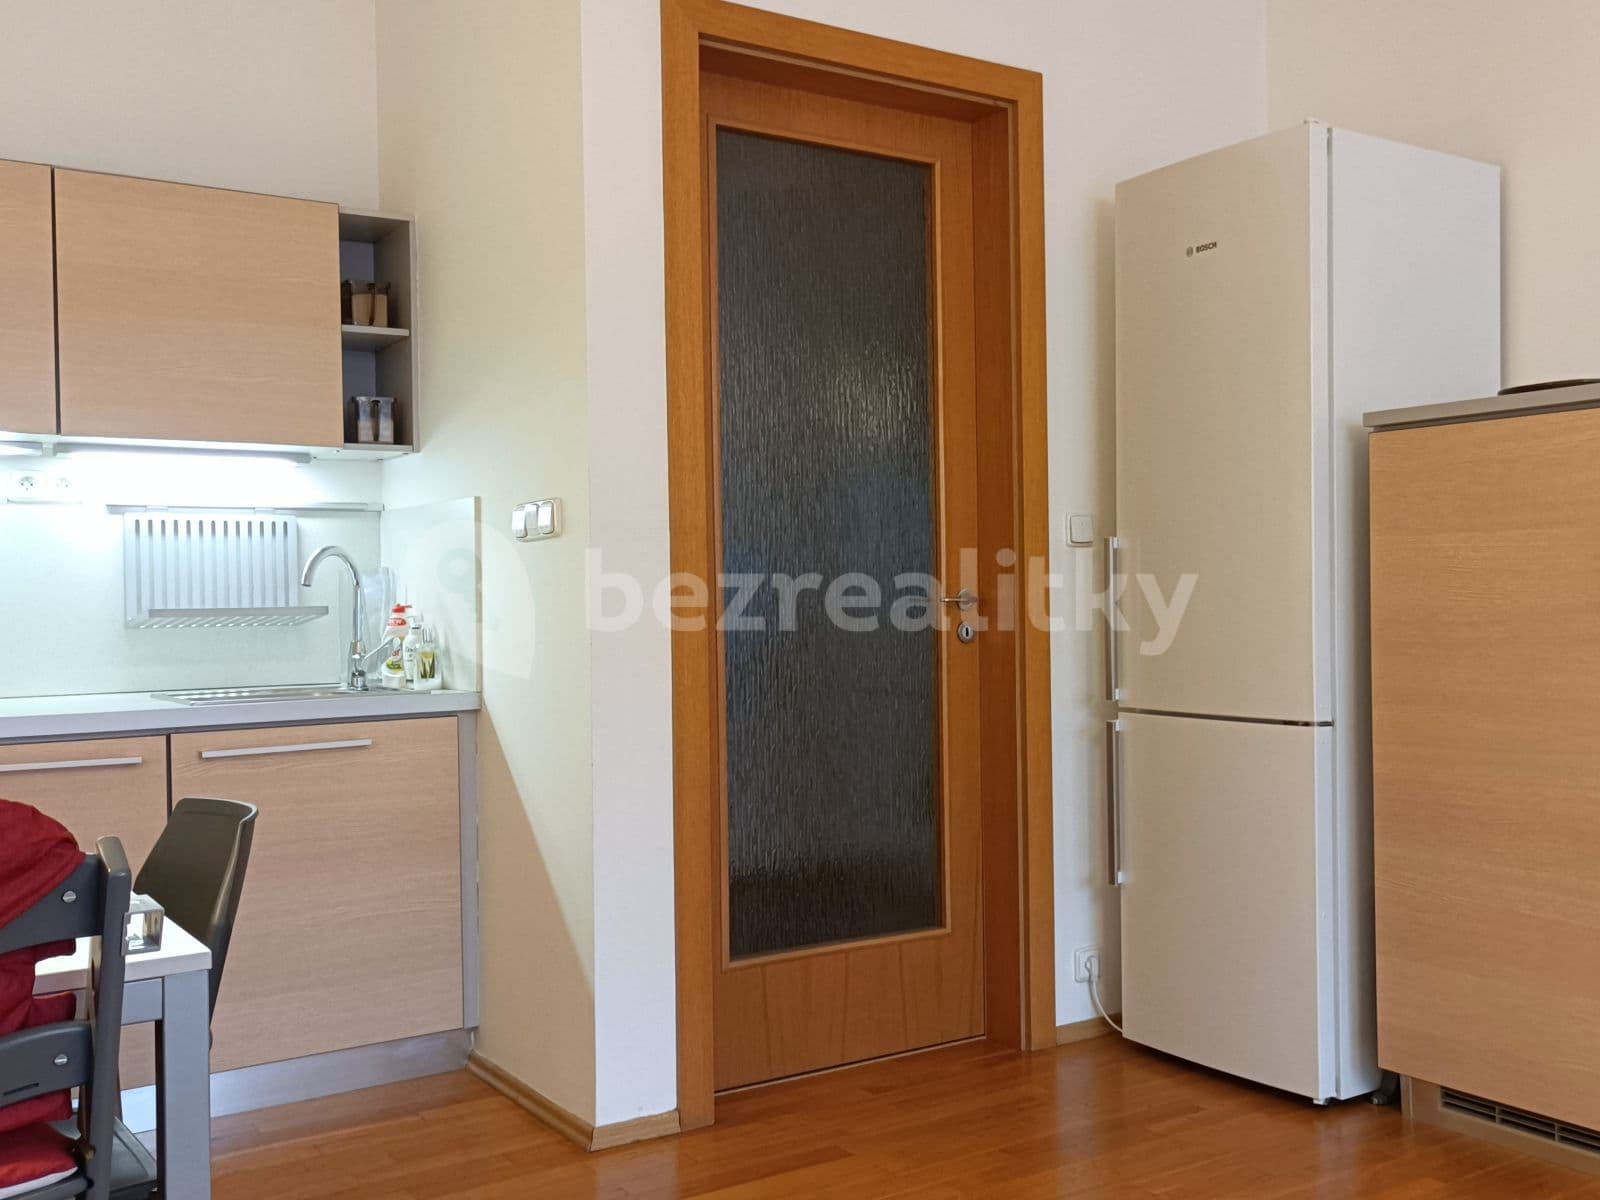 1 bedroom with open-plan kitchen flat to rent, 63 m², Nedvědovo náměstí, Prague, Prague